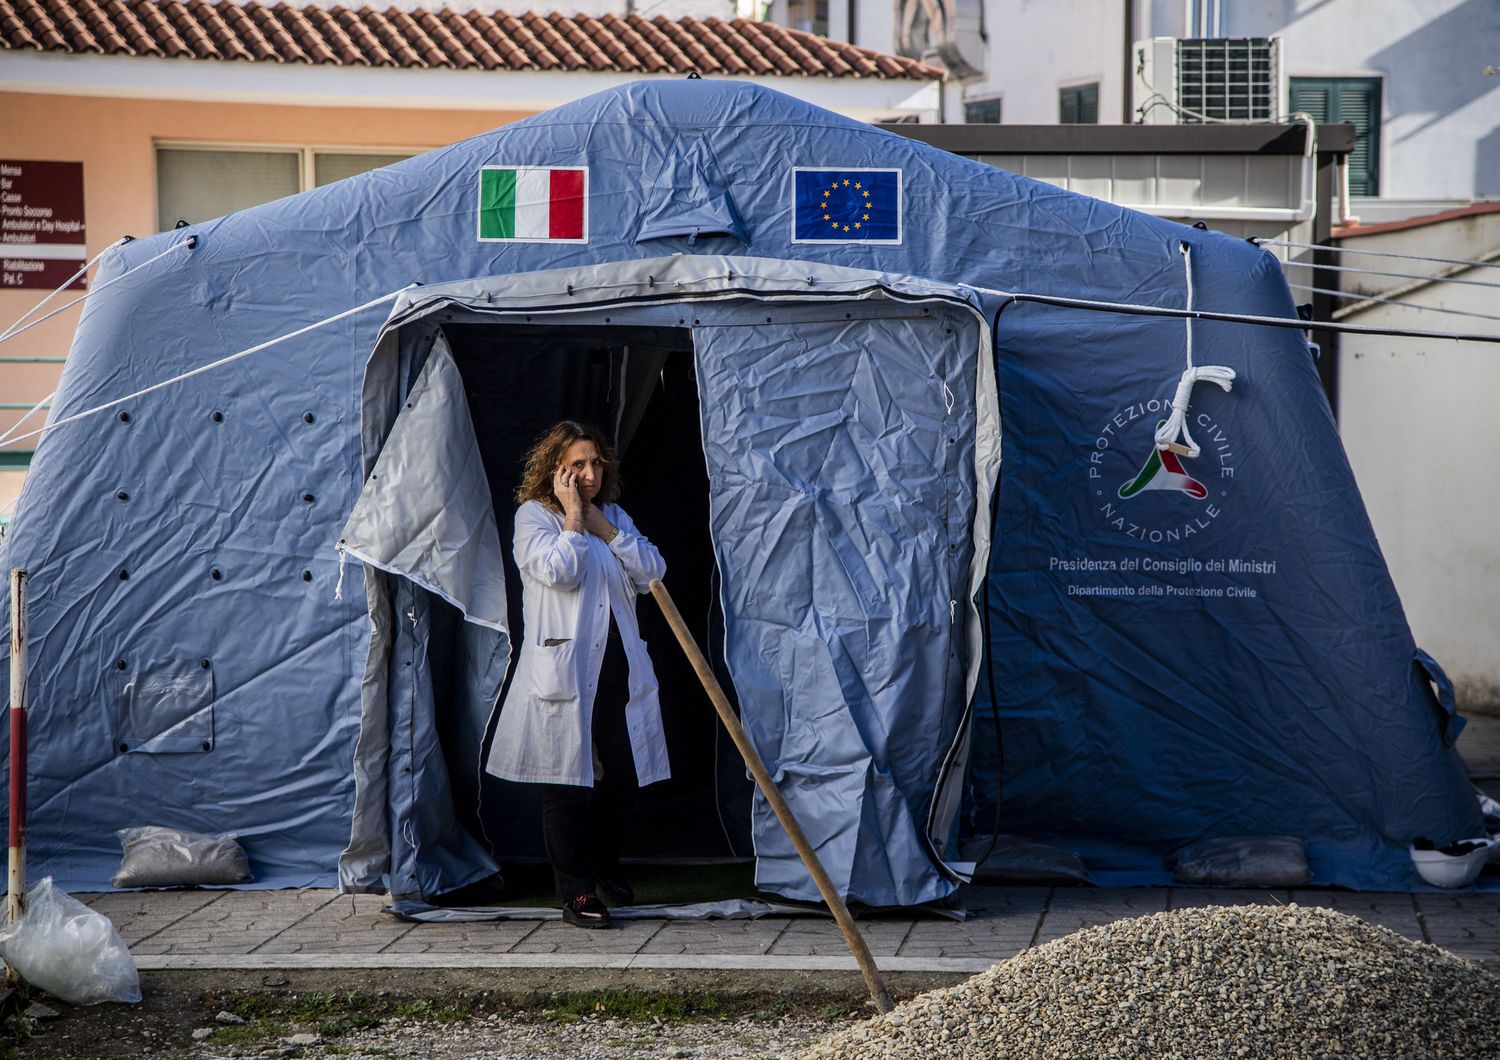 Coronavirus: tenda pre triage allestita a Roma